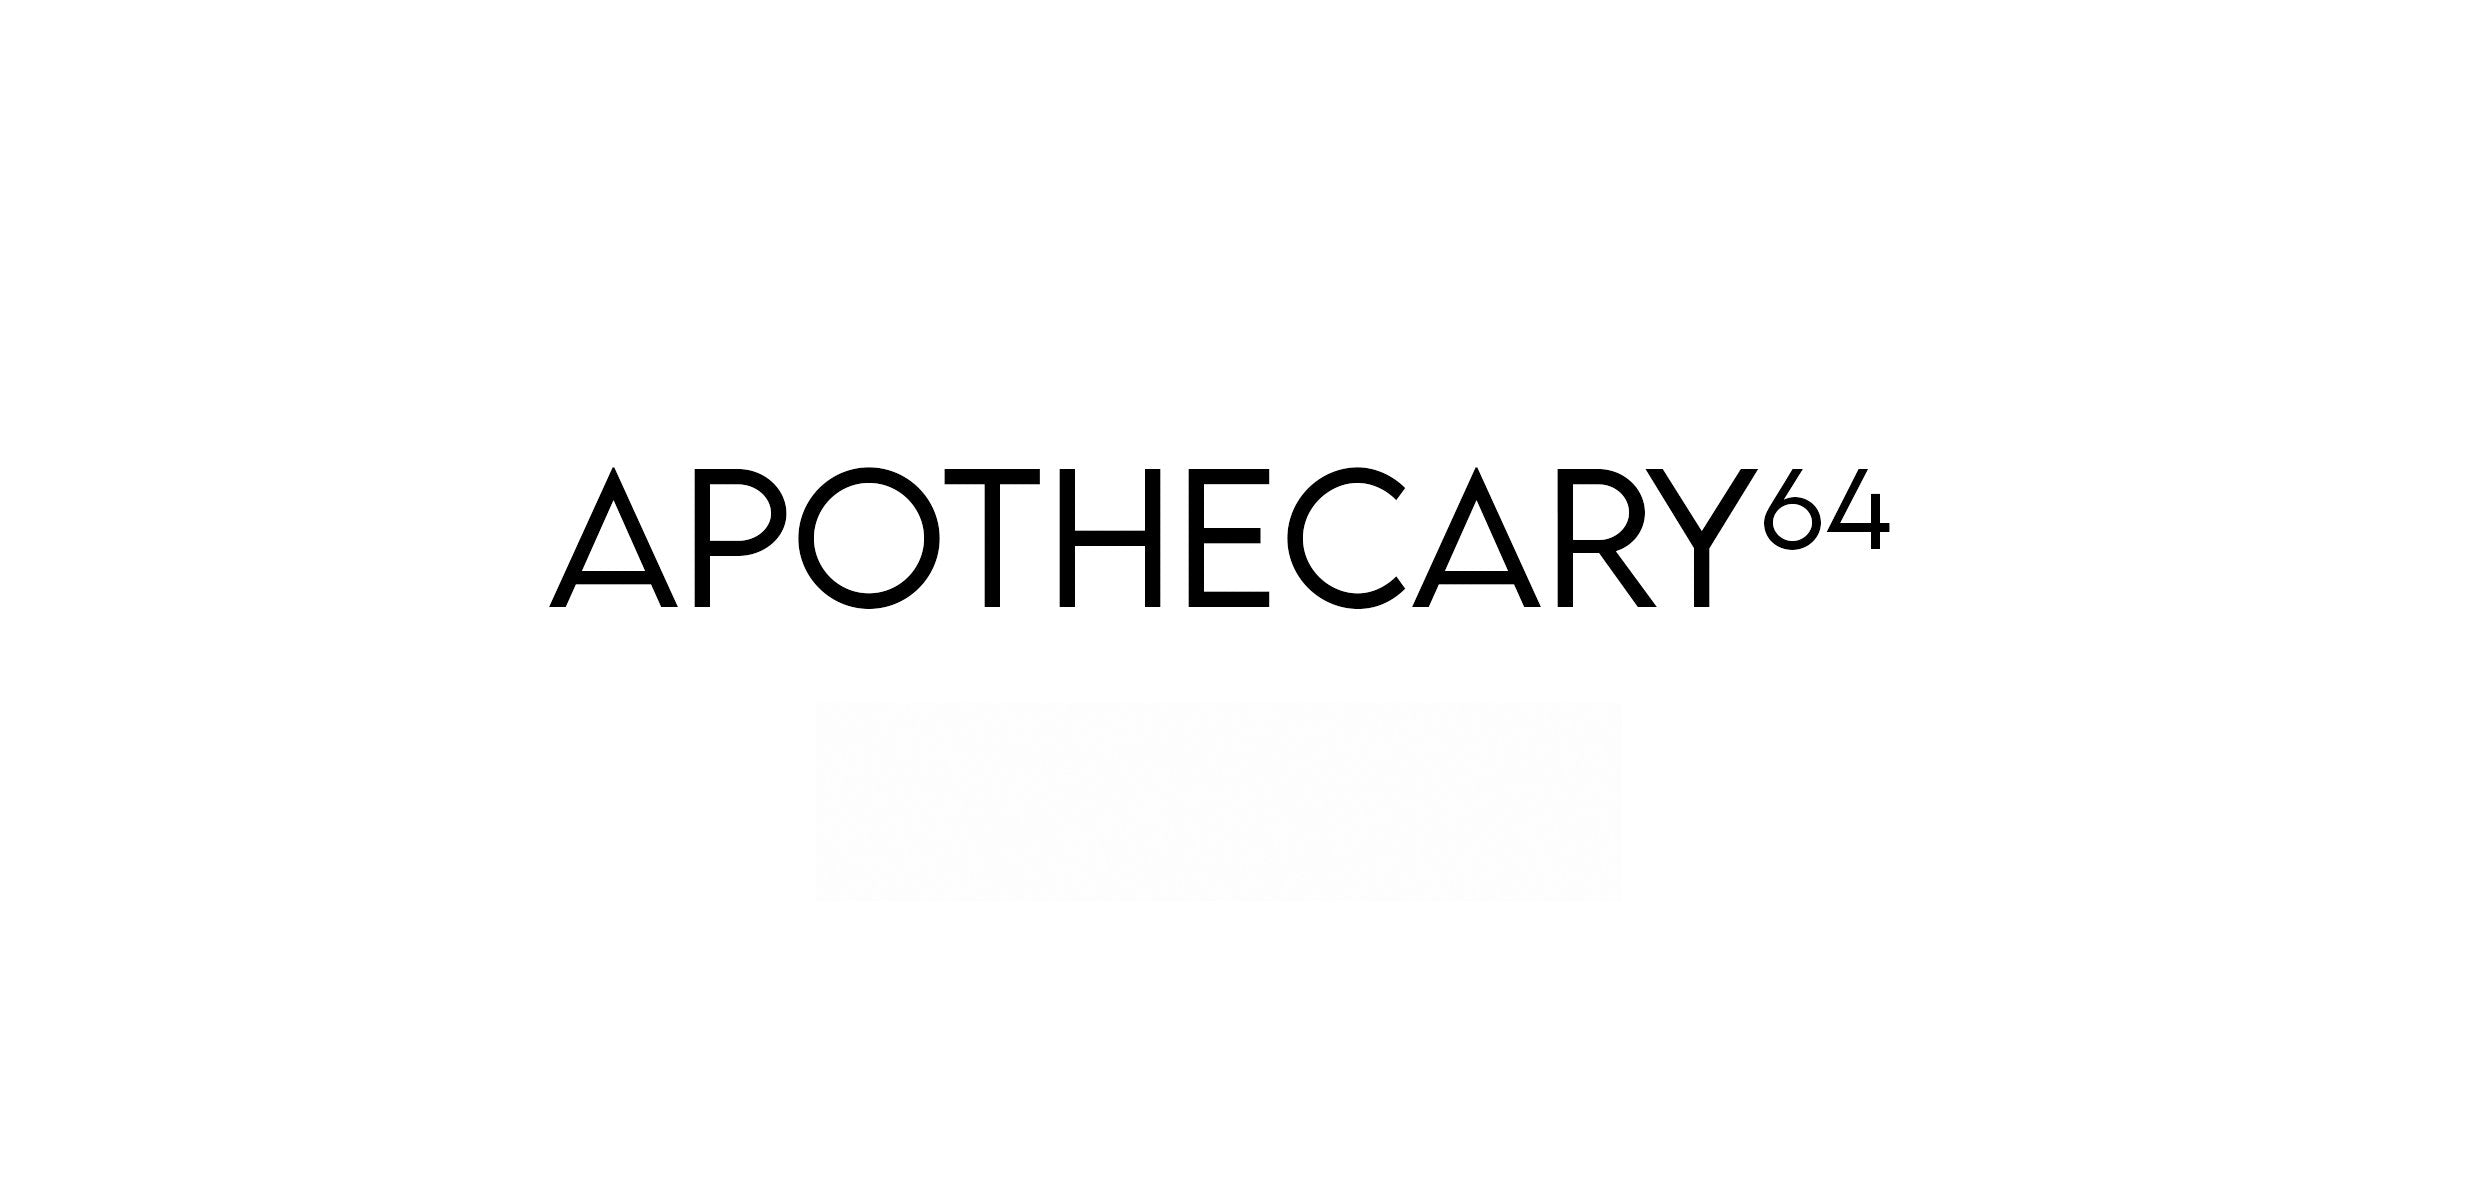 APOTHECARY64